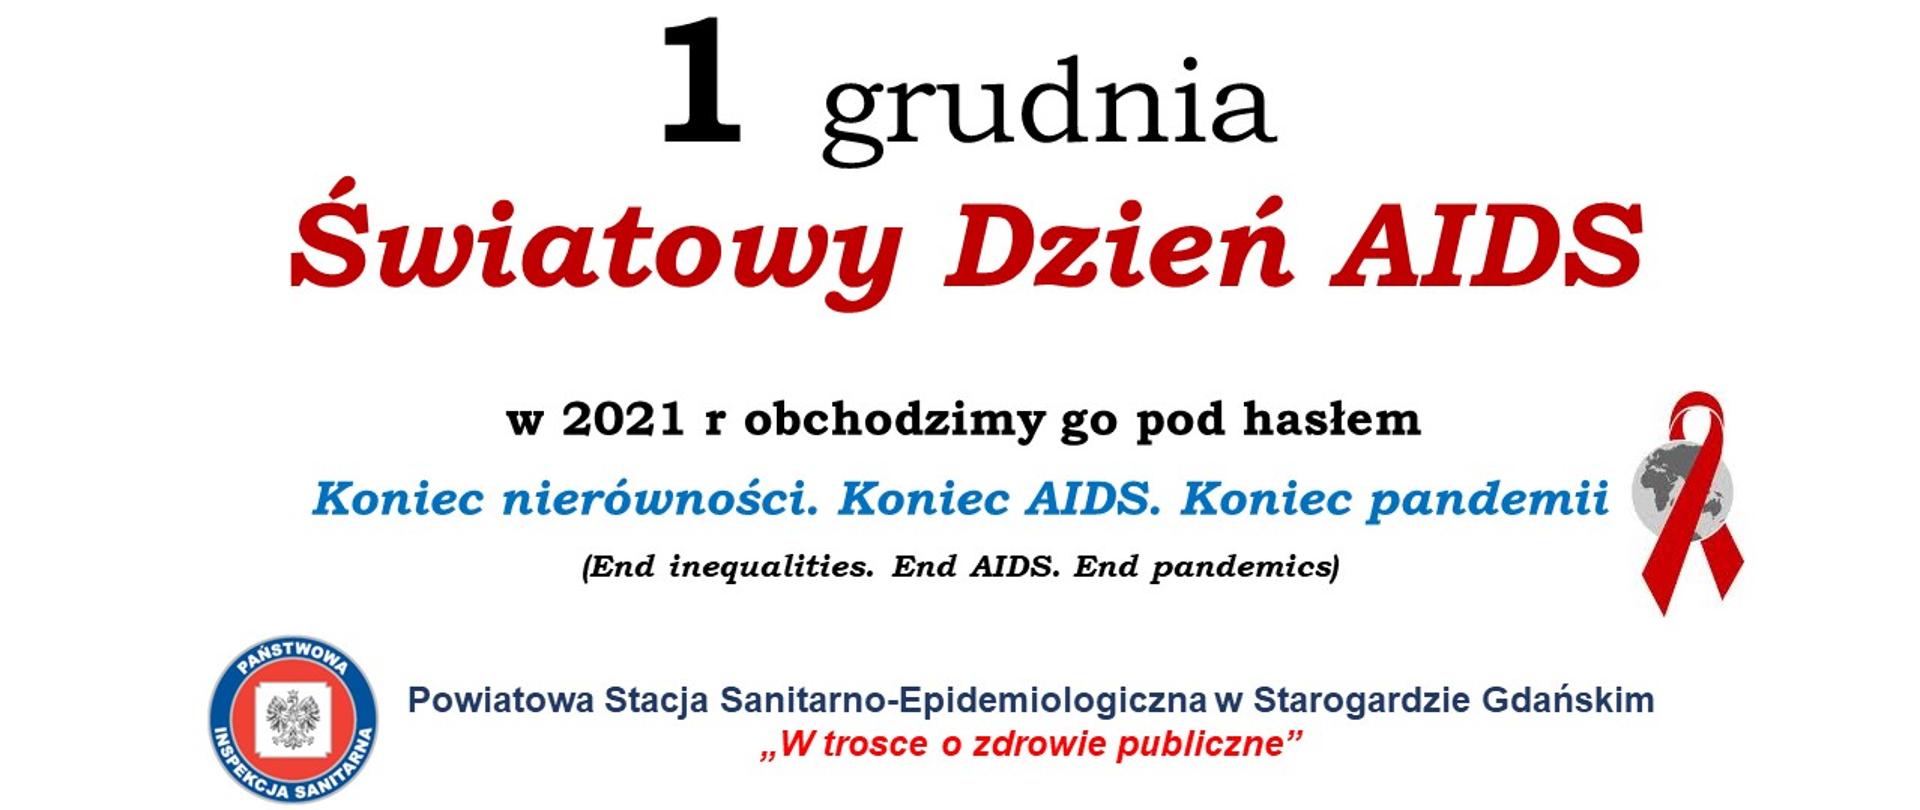 Światowy Dzień AIDS 2021